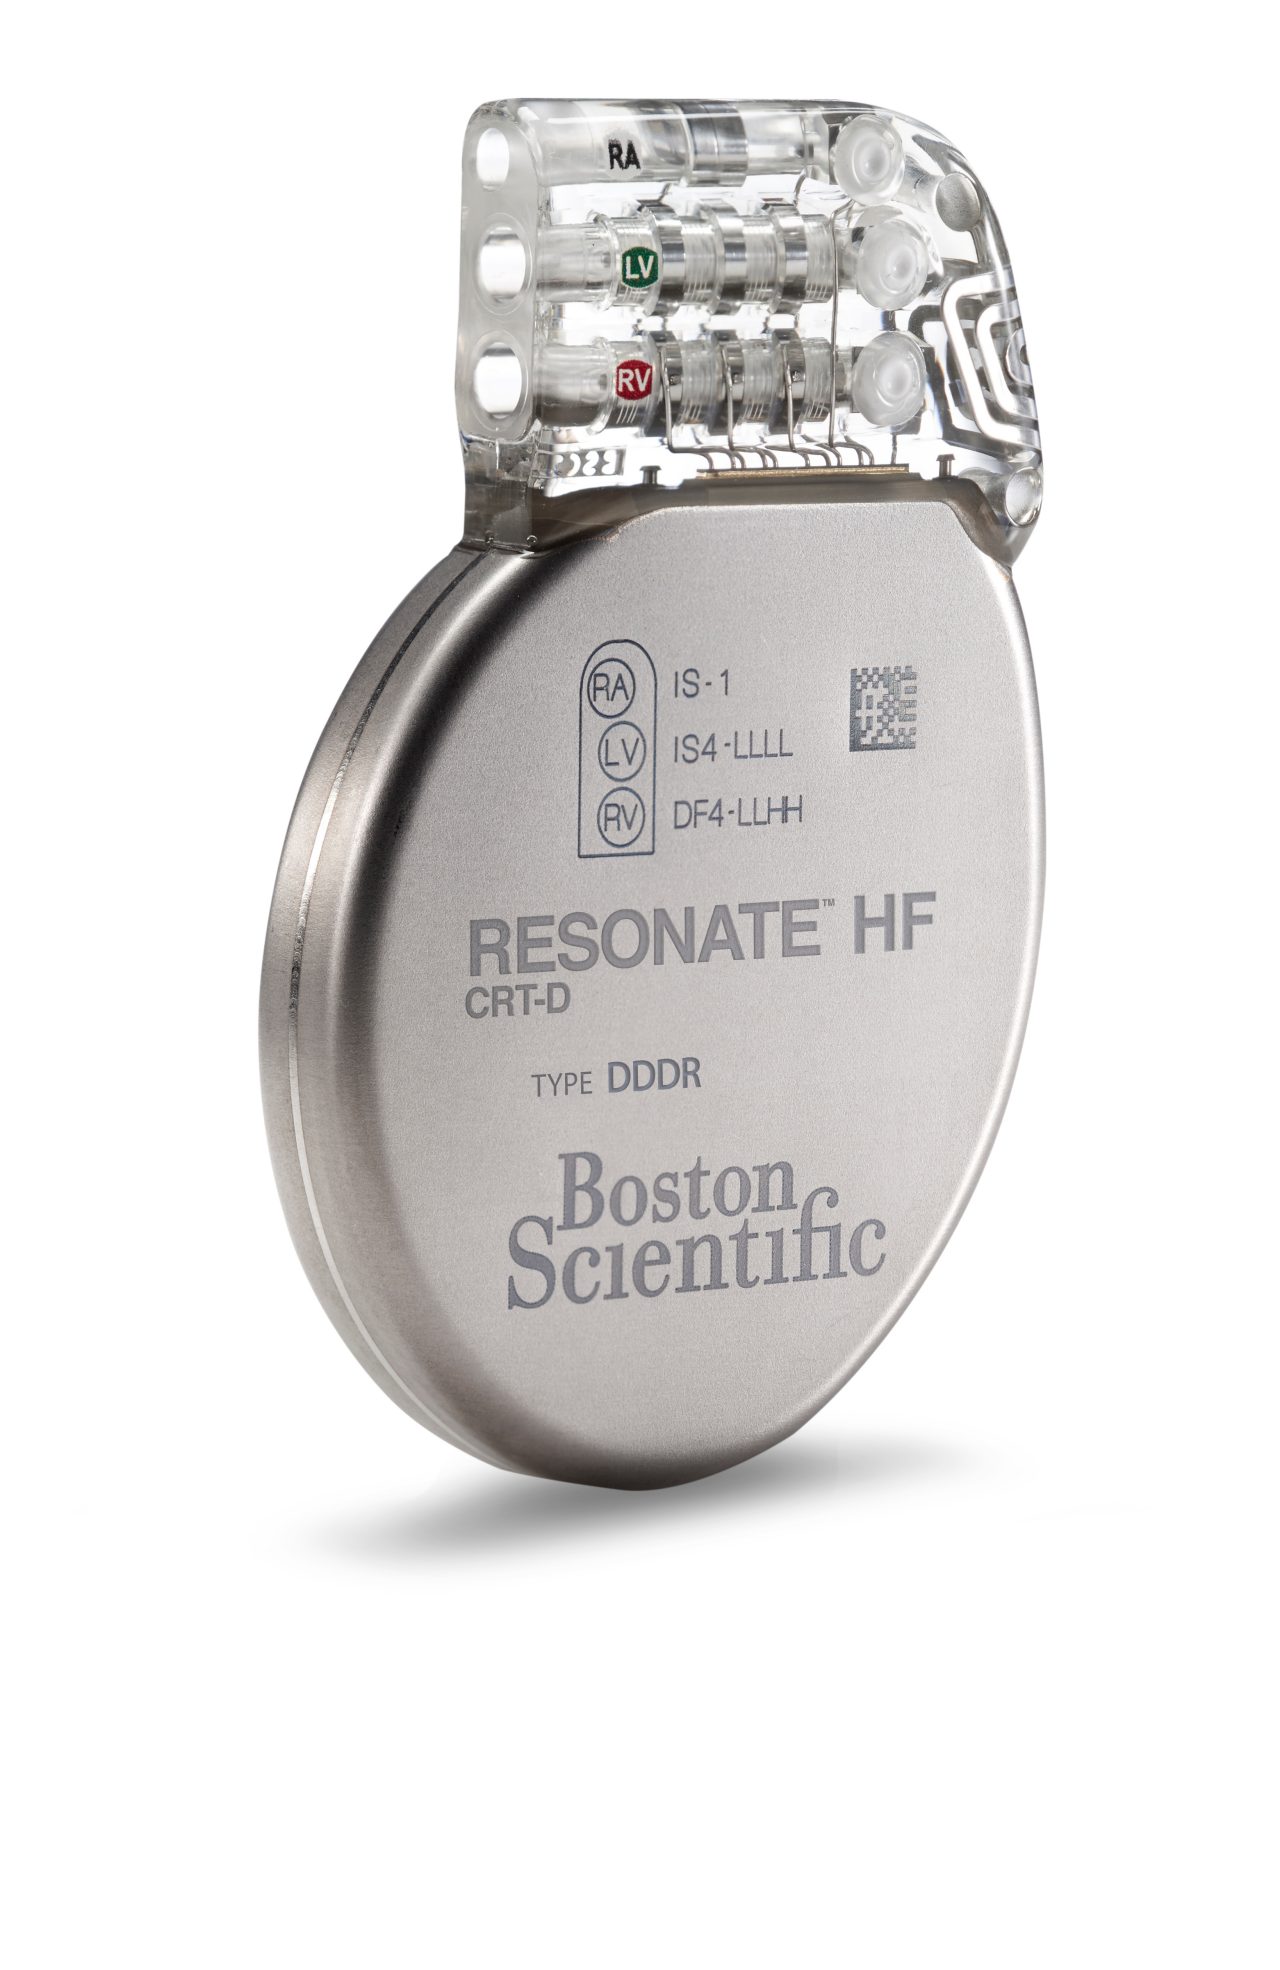 Boston Scientific’s Resonate HF